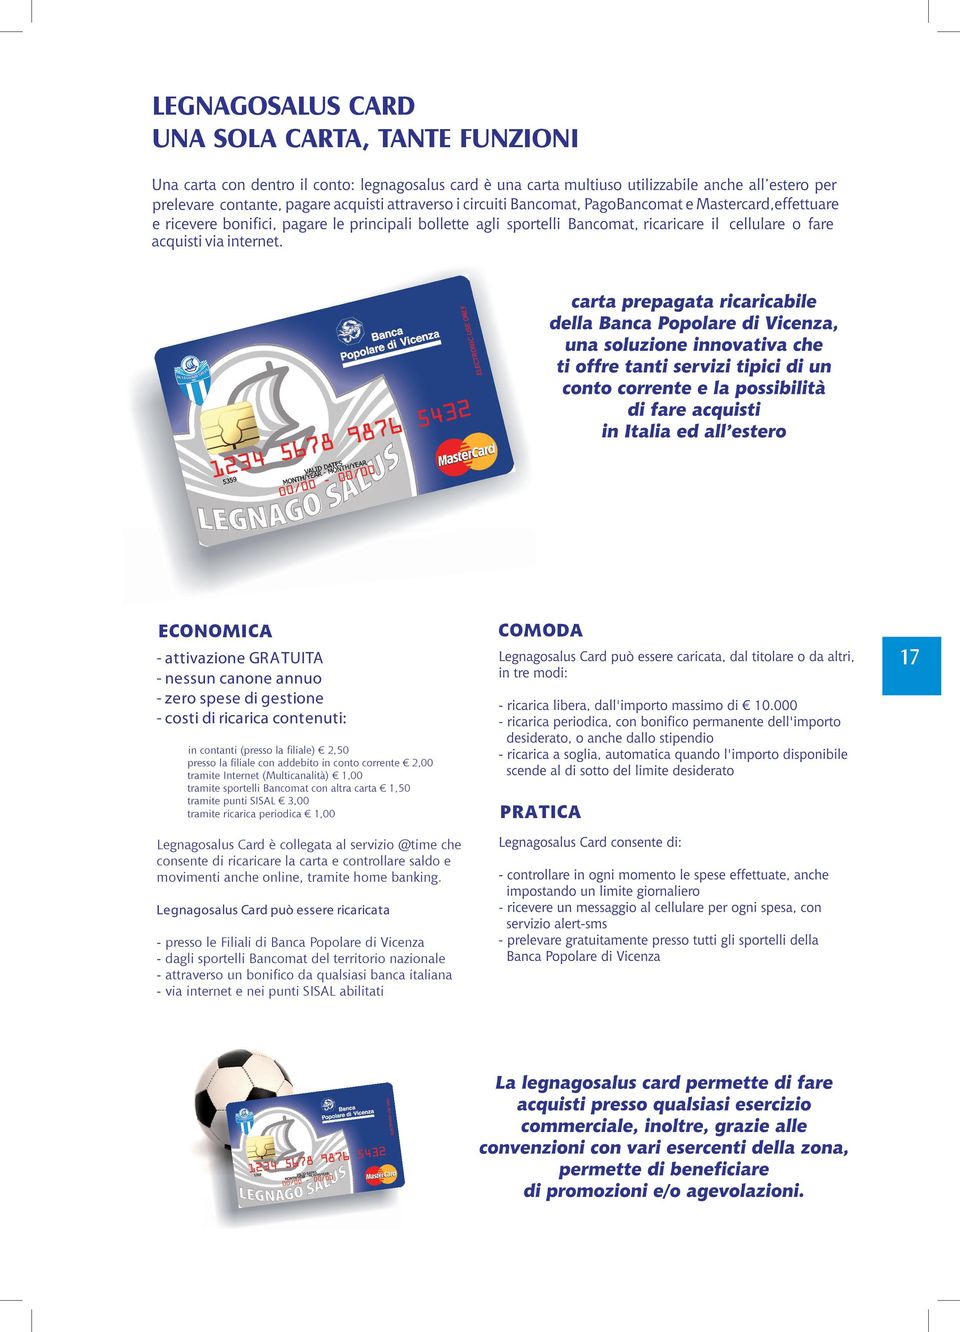 Legnagosalus Card è collegata al servizio @time che consente di ricaricare la carta e controllare saldo e movimenti anche online, tramite home banking.